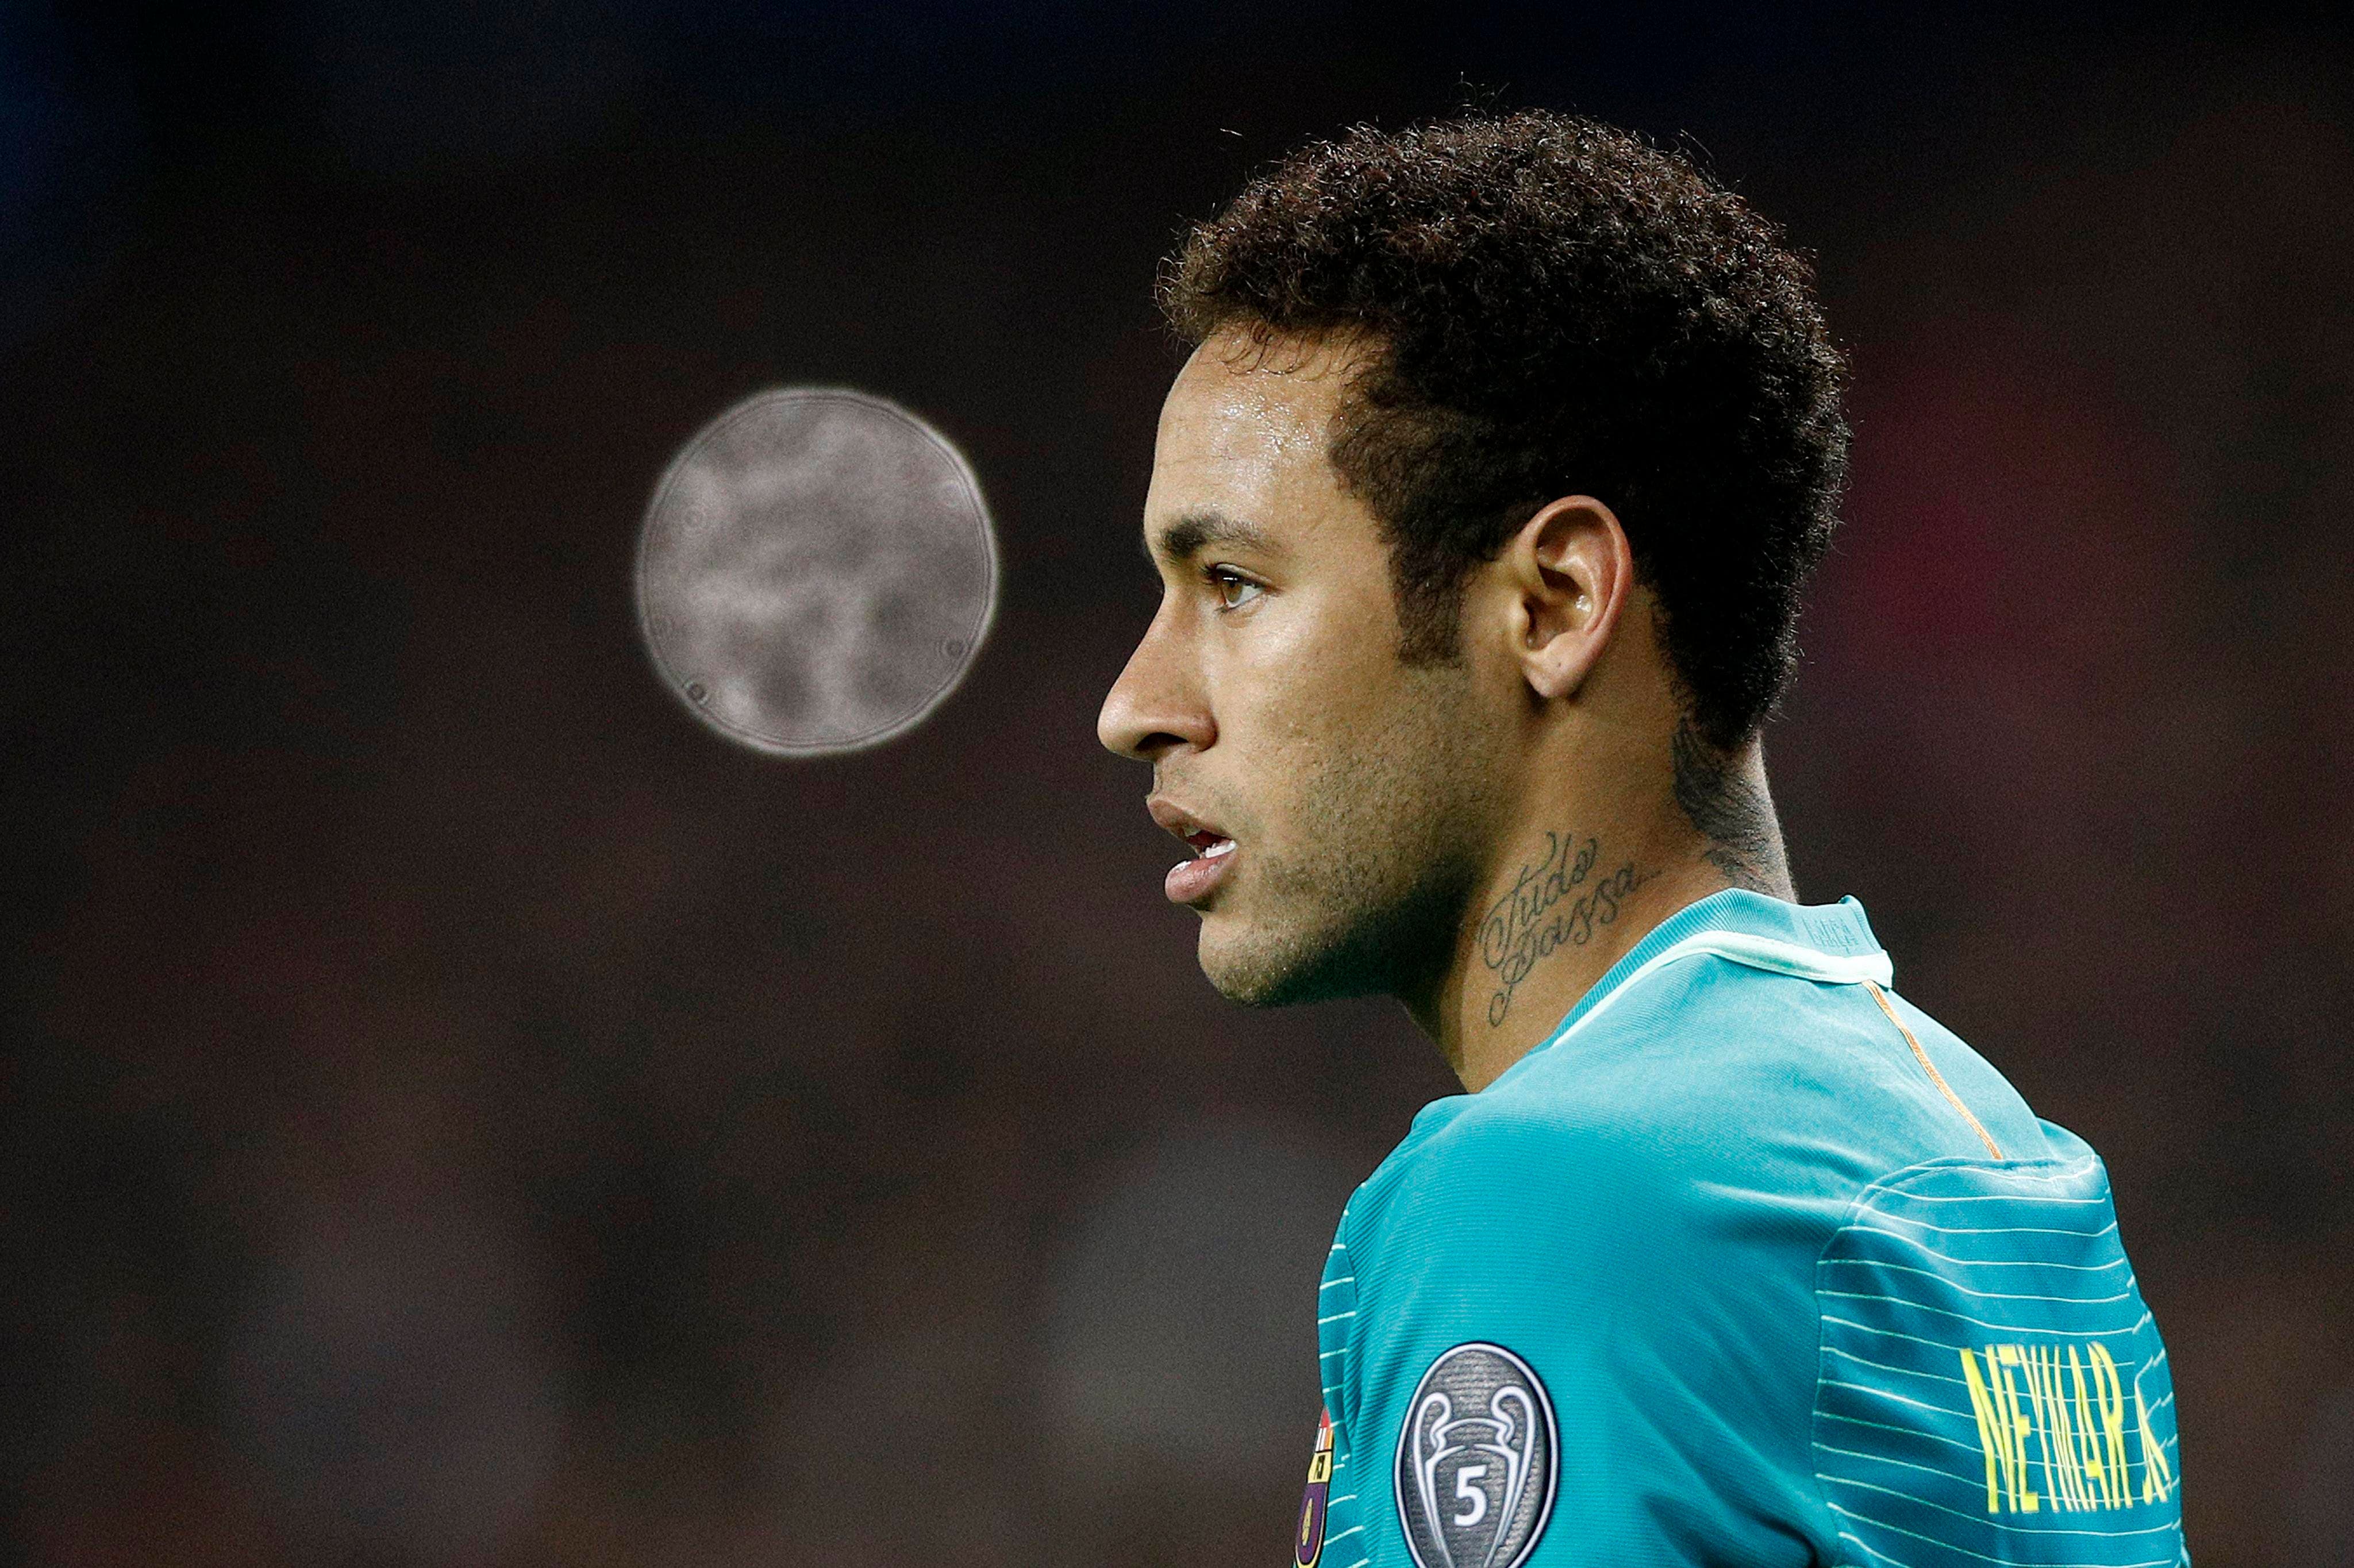 Confirmado el procesamiento del Barça por estafa en el fichaje de Neymar